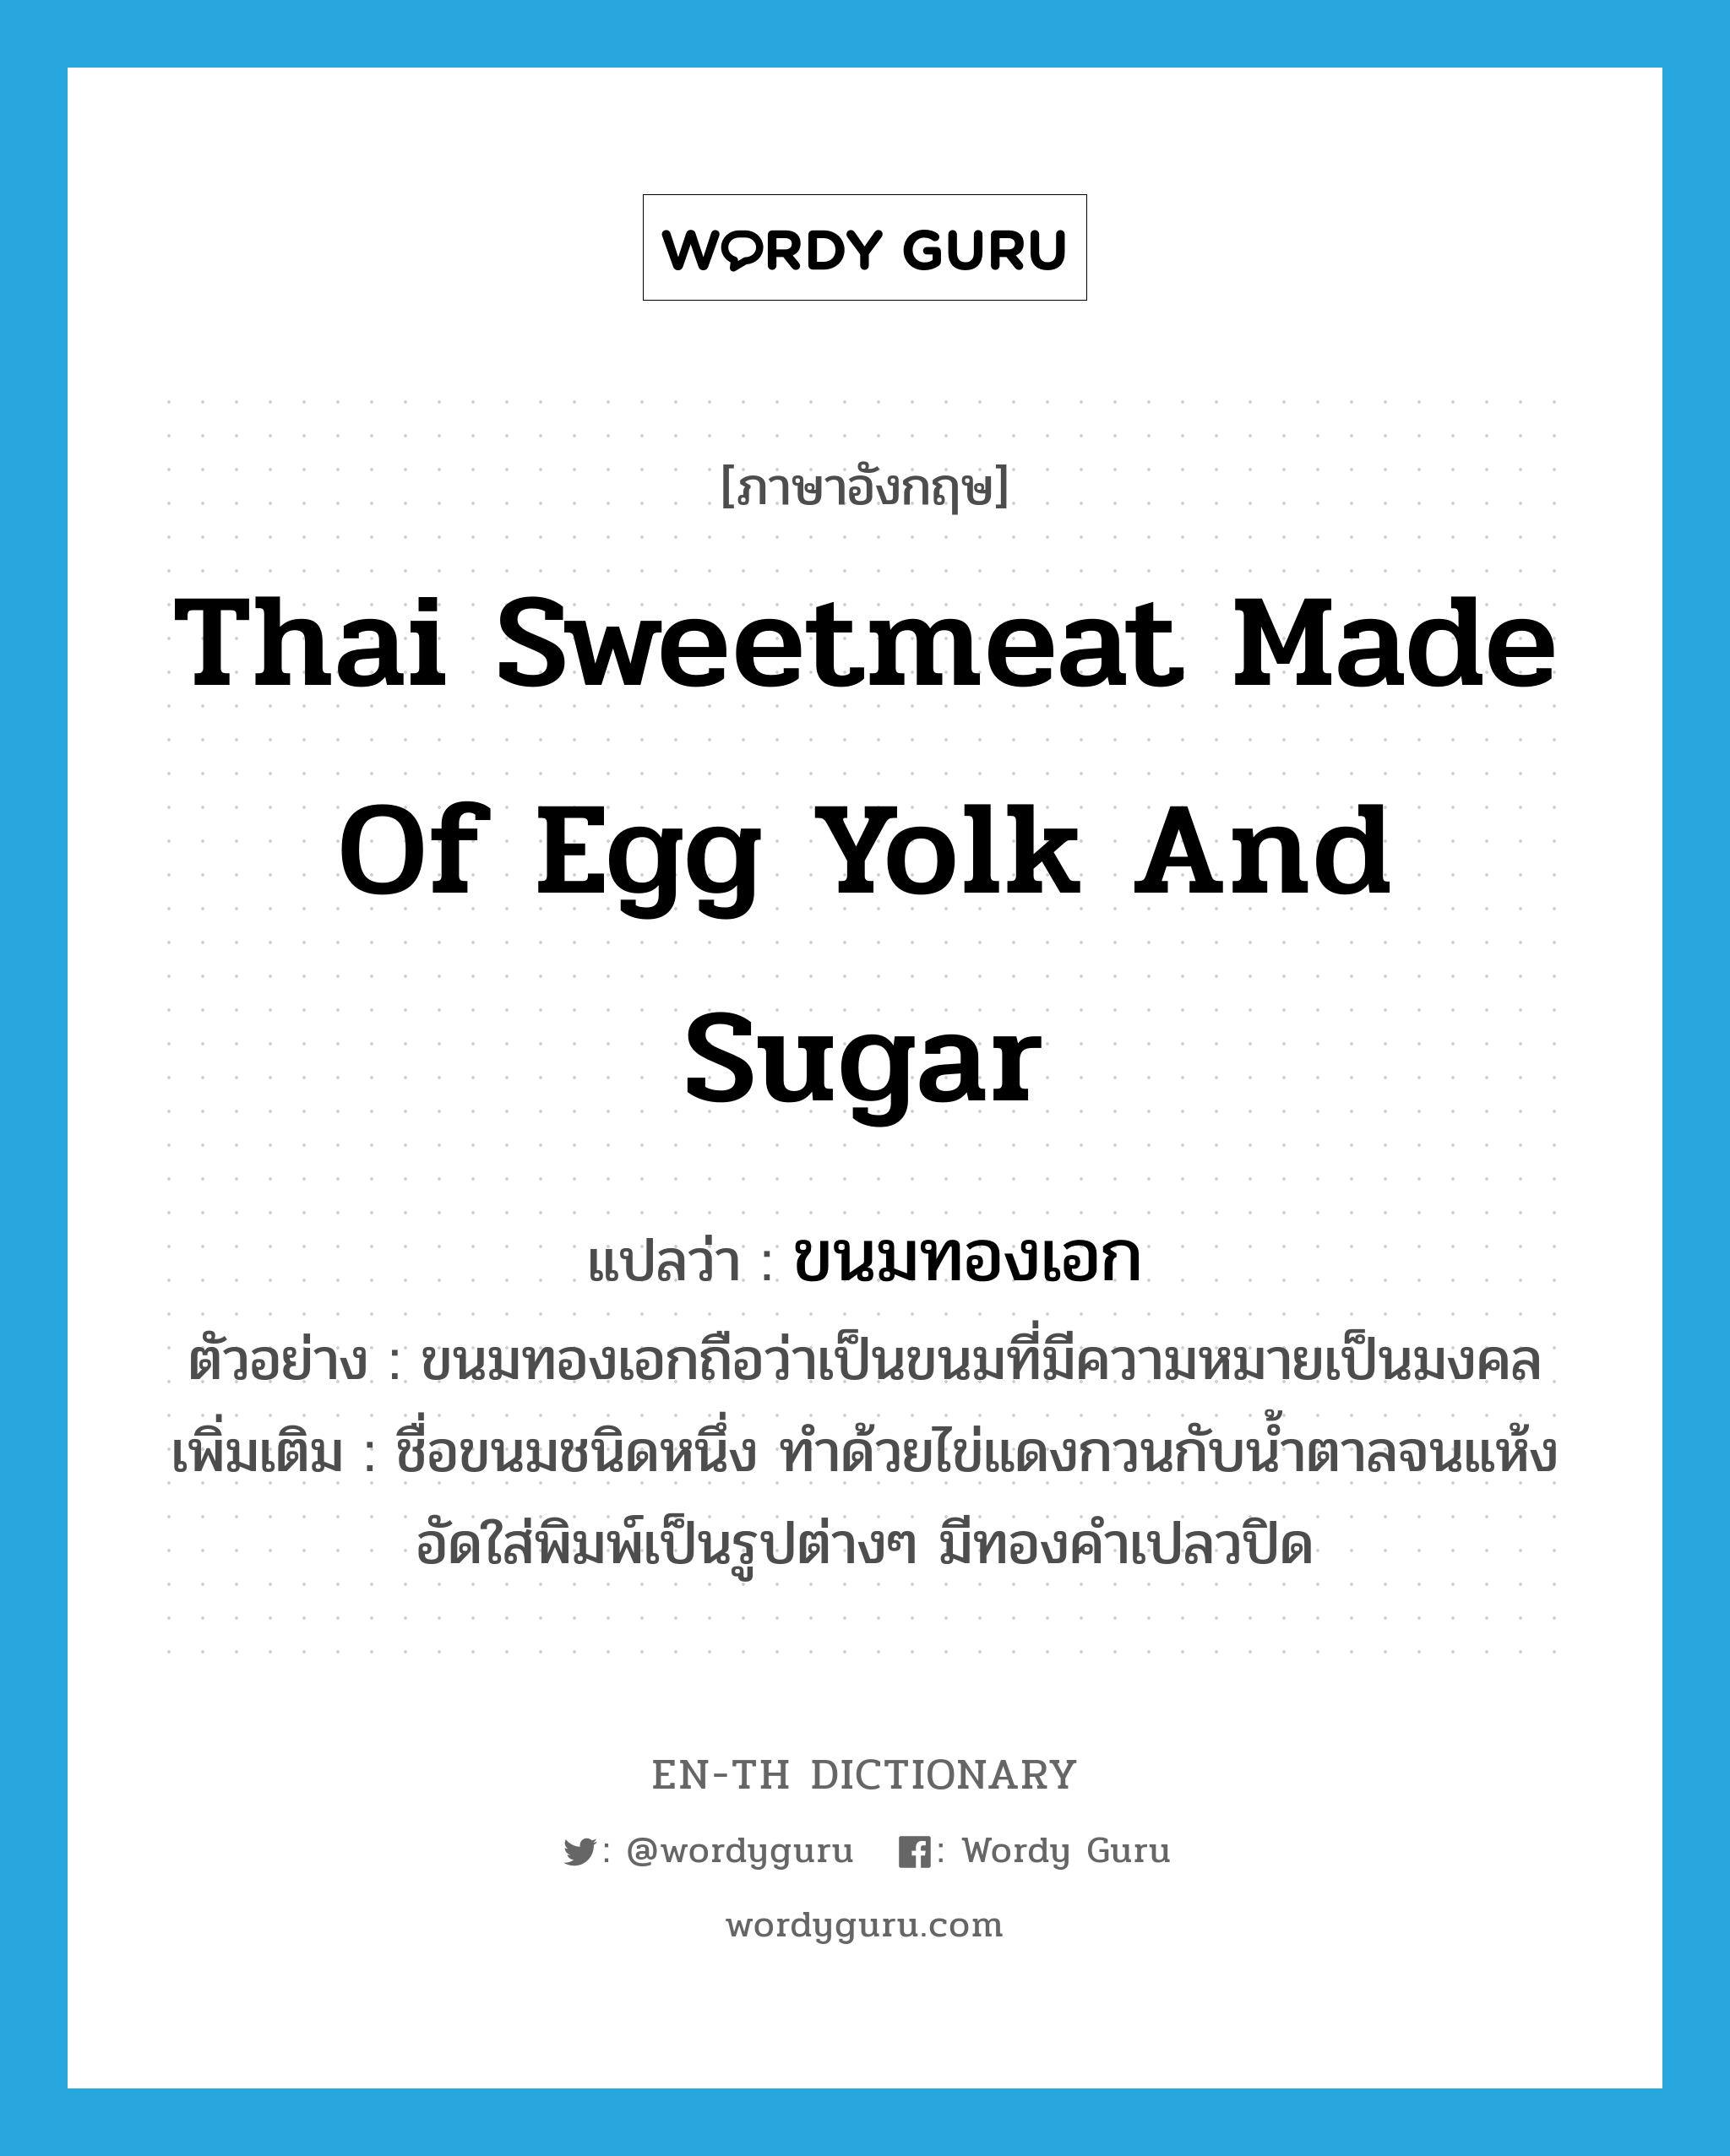 Thai sweetmeat made of egg yolk and sugar แปลว่า?, คำศัพท์ภาษาอังกฤษ Thai sweetmeat made of egg yolk and sugar แปลว่า ขนมทองเอก ประเภท N ตัวอย่าง ขนมทองเอกถือว่าเป็นขนมที่มีความหมายเป็นมงคล เพิ่มเติม ชื่อขนมชนิดหนึ่ง ทำด้วยไข่แดงกวนกับน้ำตาลจนแห้ง อัดใส่พิมพ์เป็นรูปต่างๆ มีทองคำเปลวปิด หมวด N